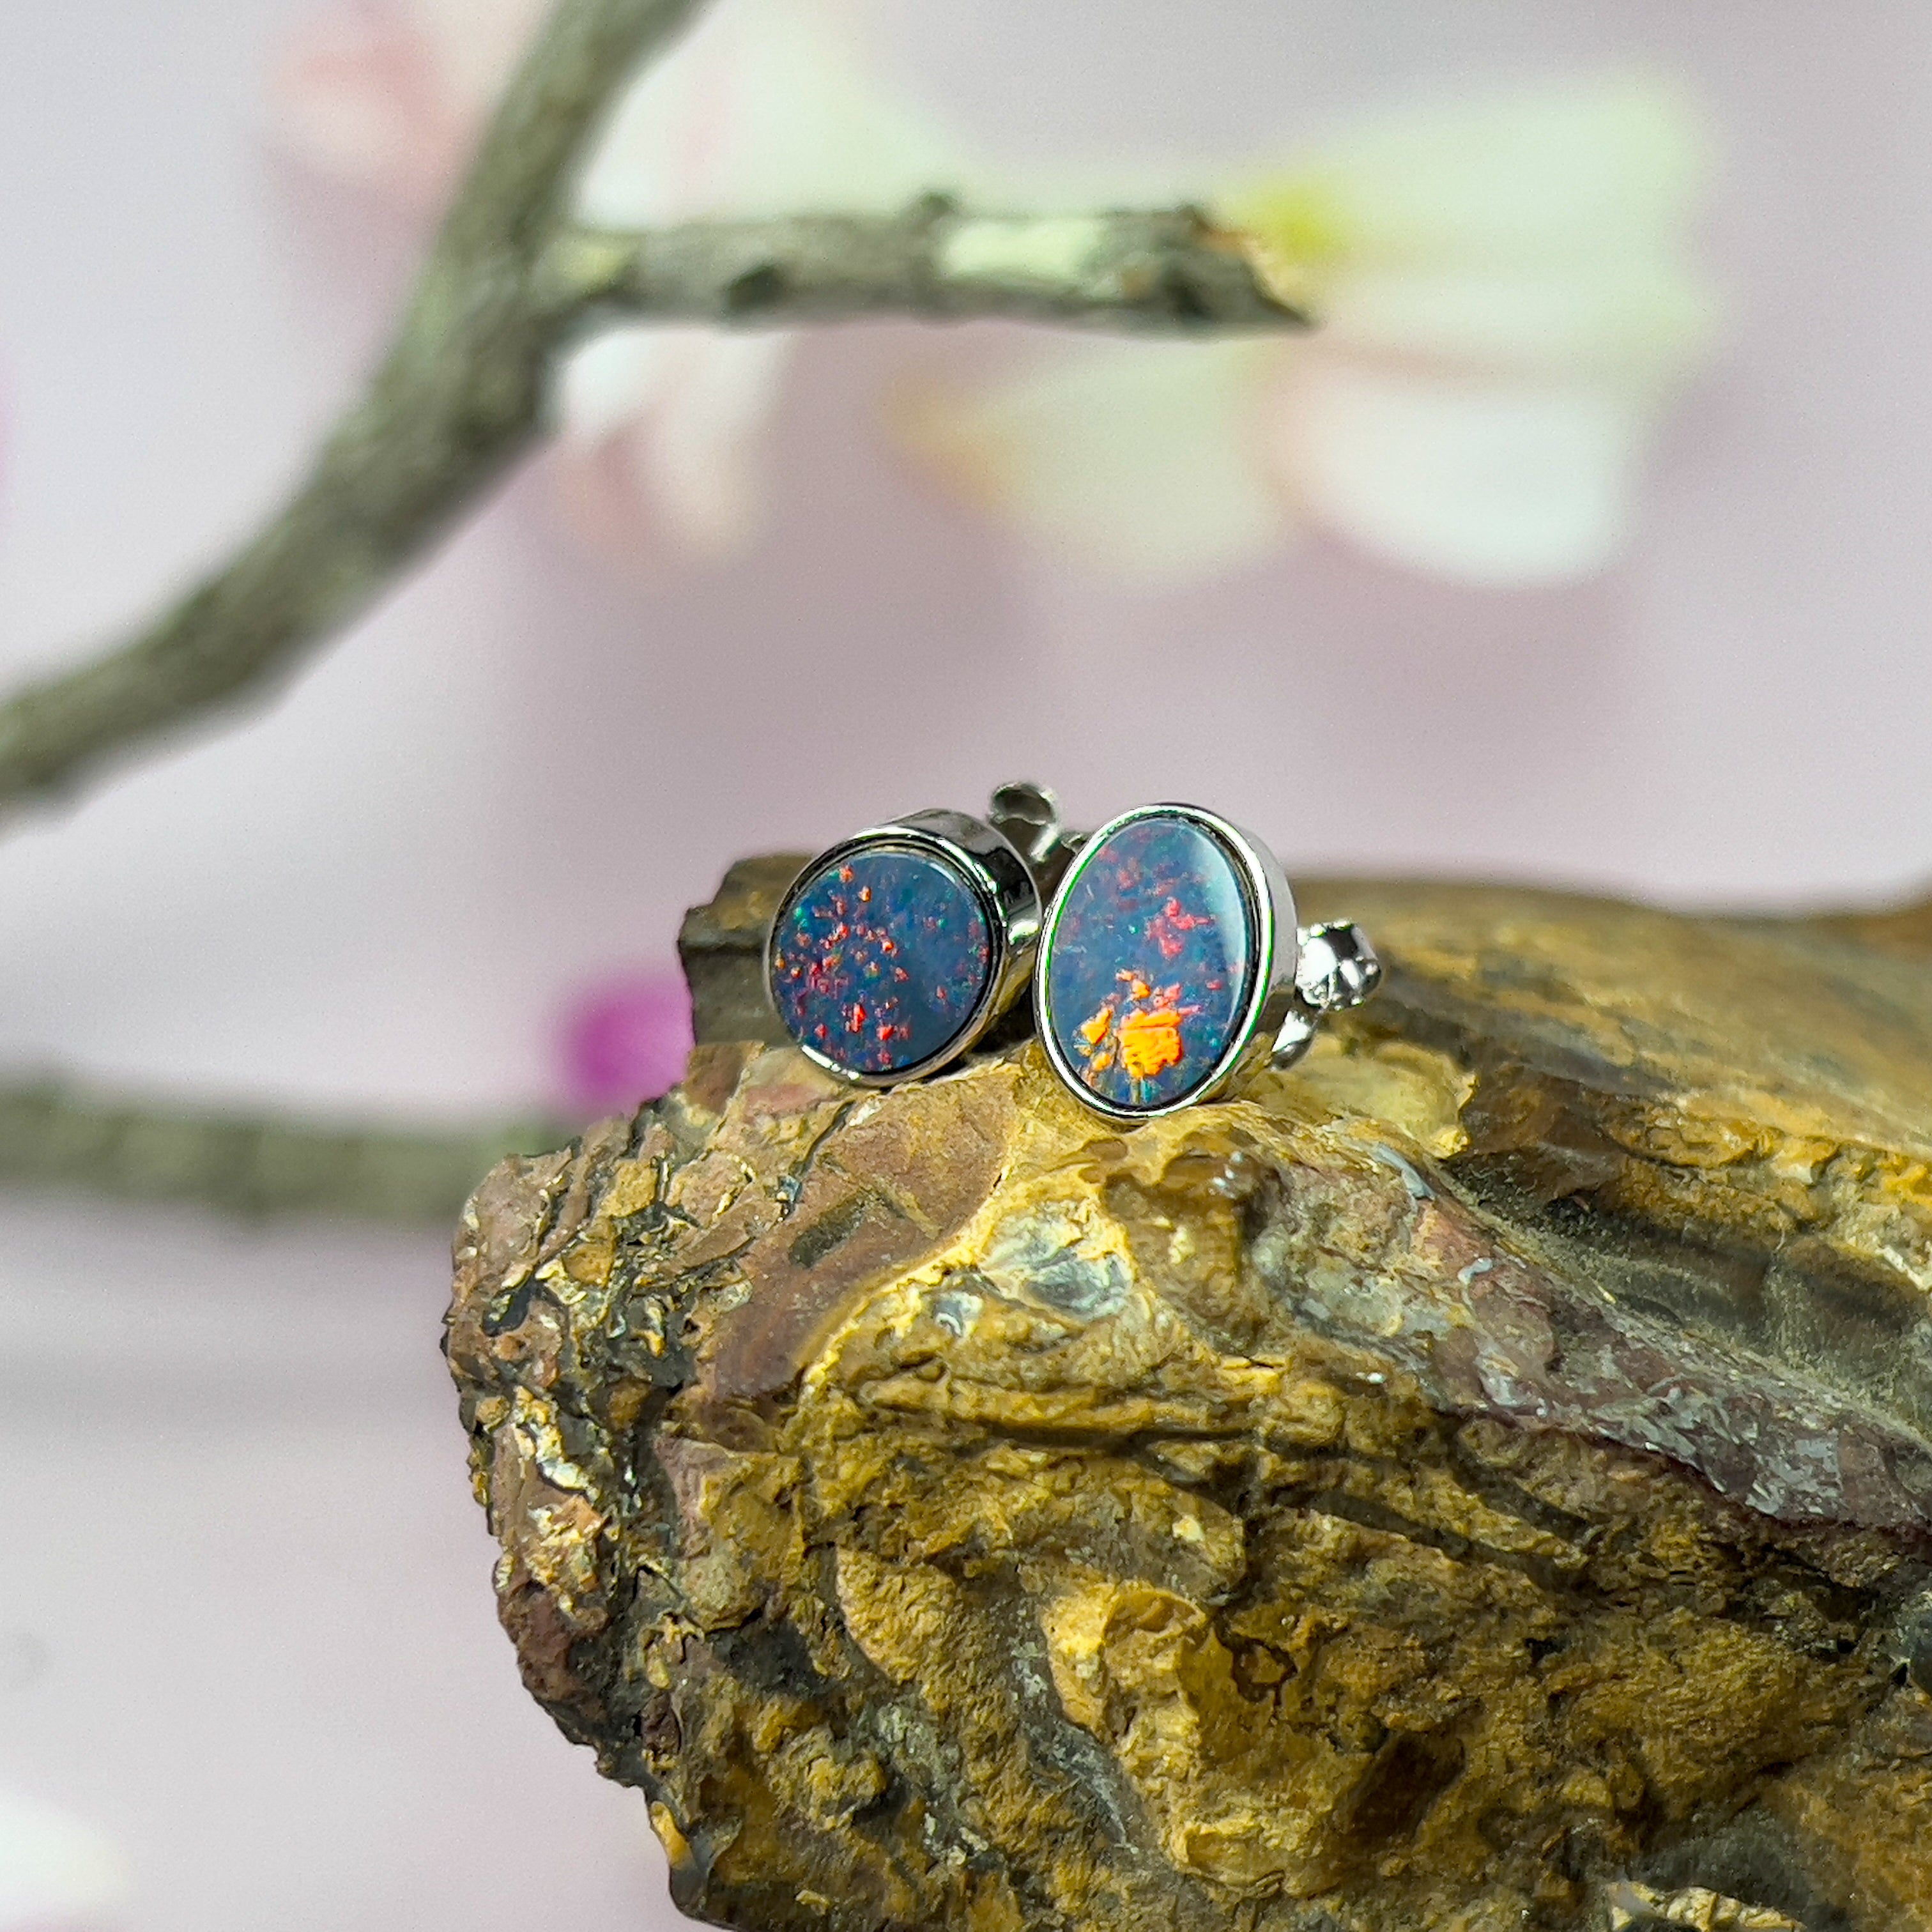 Sterling silver opal doublet 8x6mm oval studs - Masterpiece Jewellery Opal & Gems Sydney Australia | Online Shop